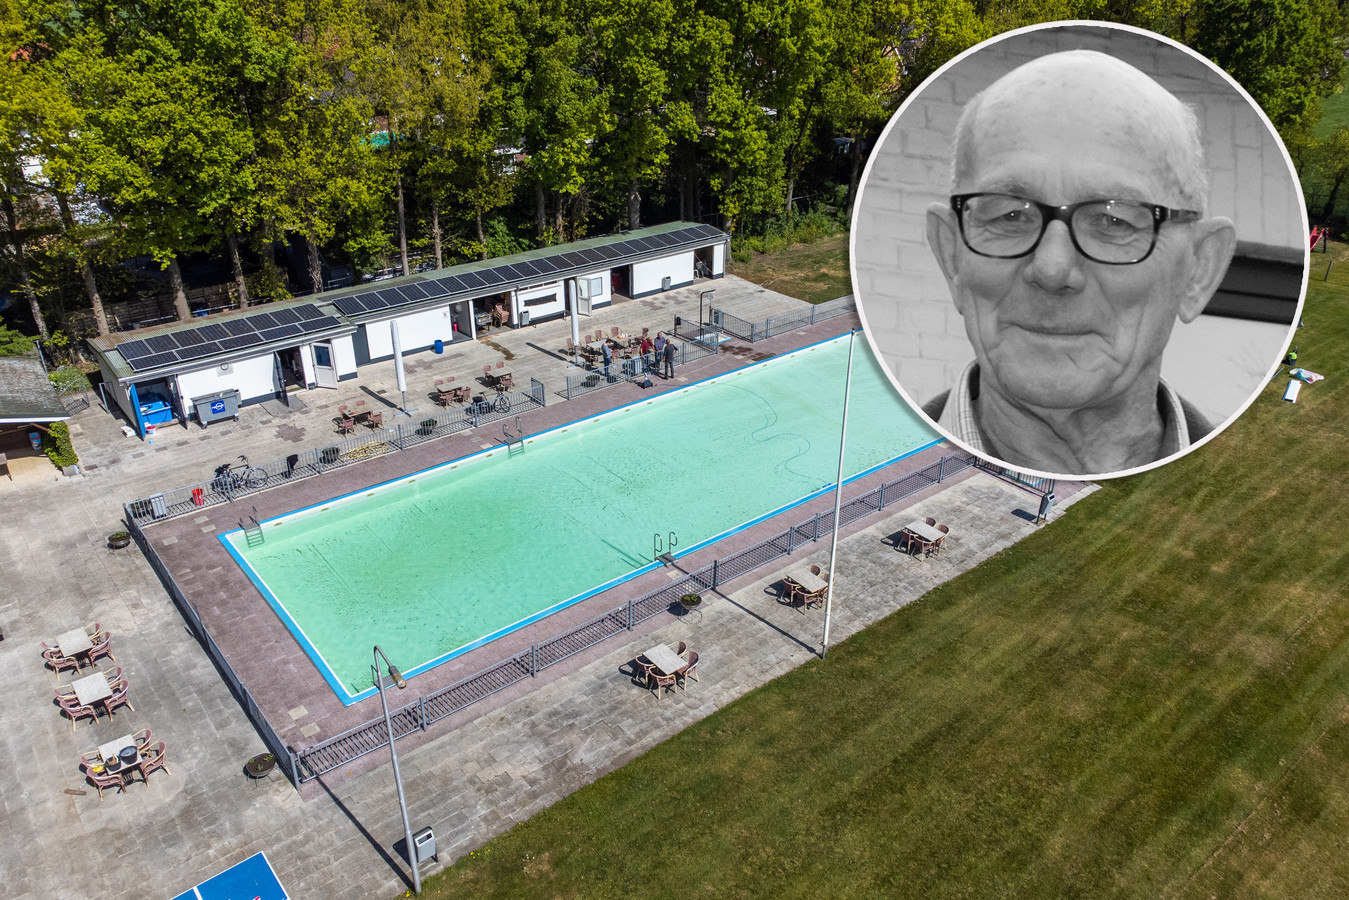 Zwembad De Bargn’s in Kloosterhaar wordt opgewaardeerd met onder meer een glijbaan in het grote bassin en een nieuwe waterspeeltuin in het peuterbad.  Inzet: Jan van Luuks.